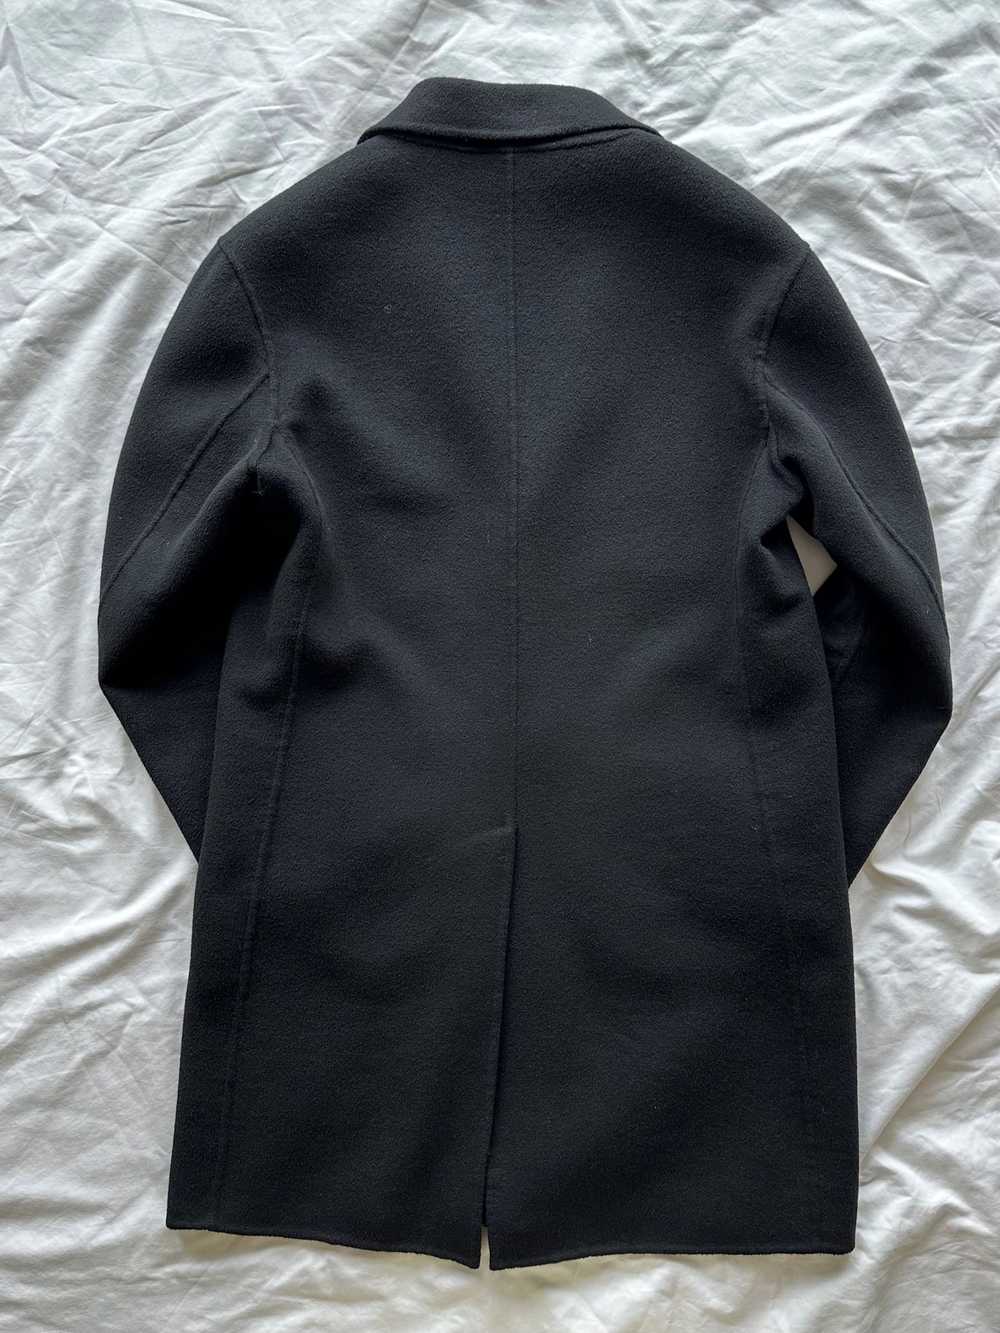 Kenzo Kenzo Wool Cashmere Overcoat - image 2